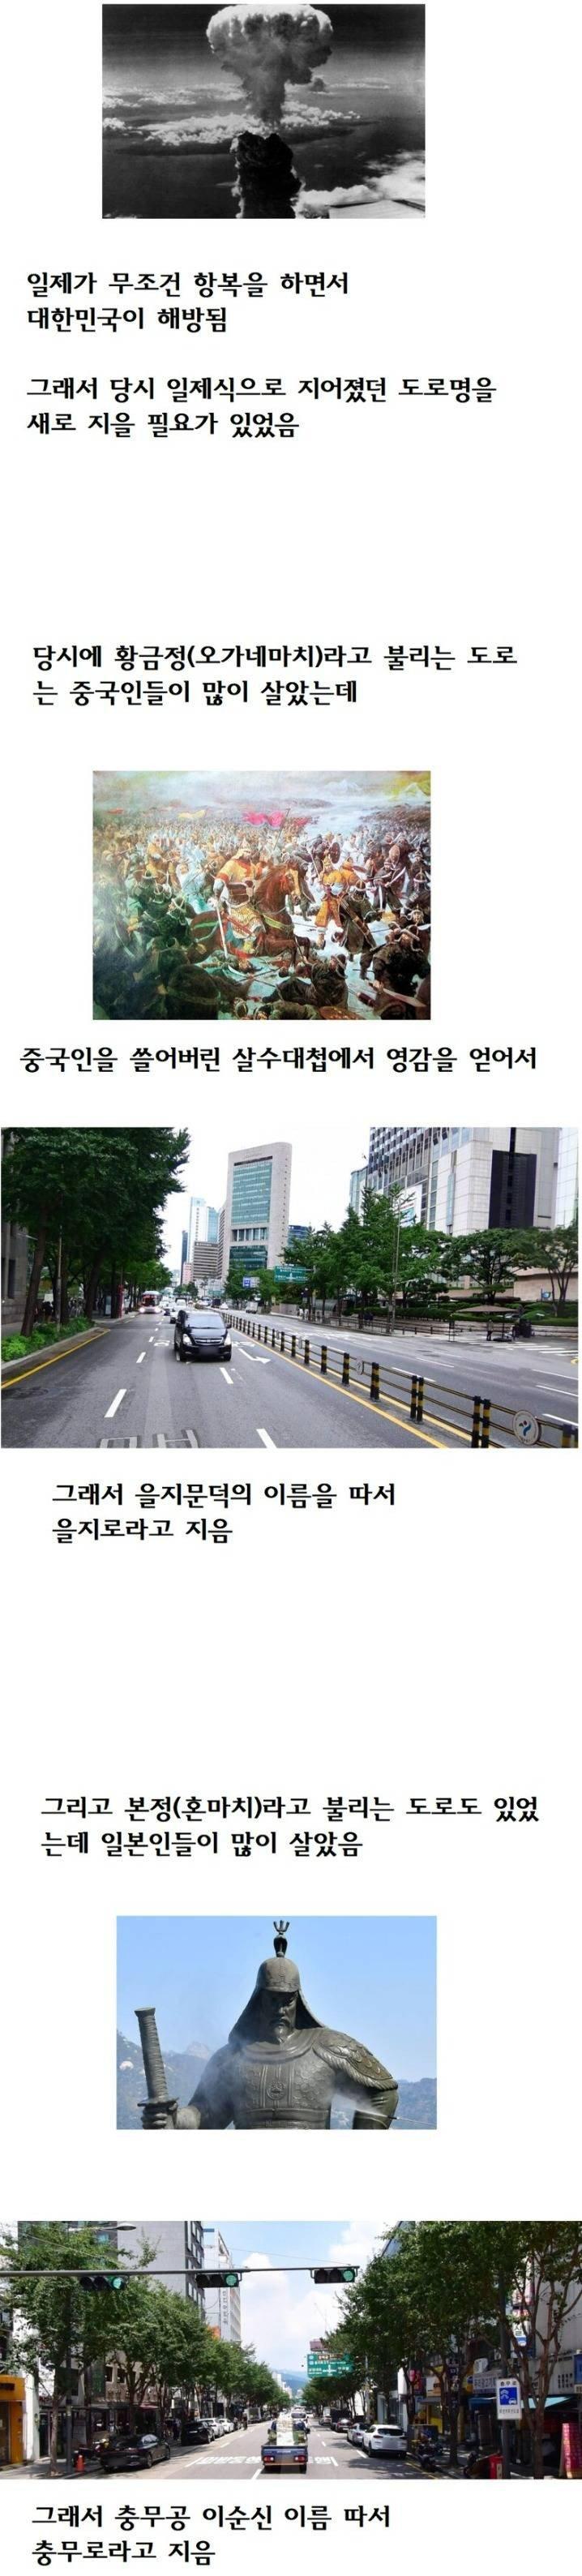 노빠꾸 서울 도로명